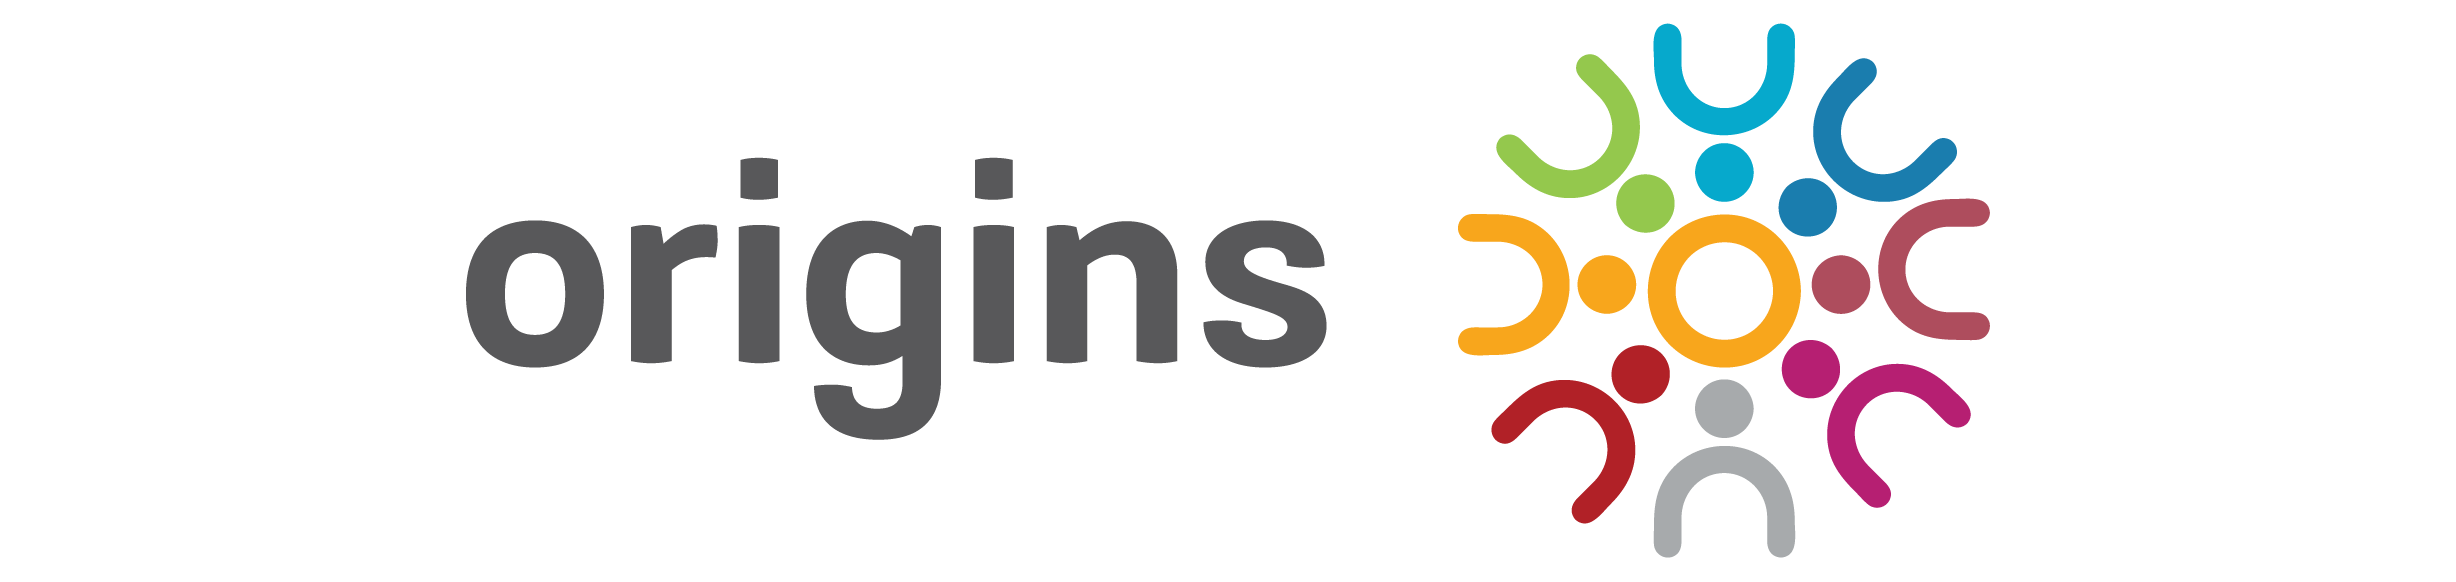 Origins NI Logo cropped